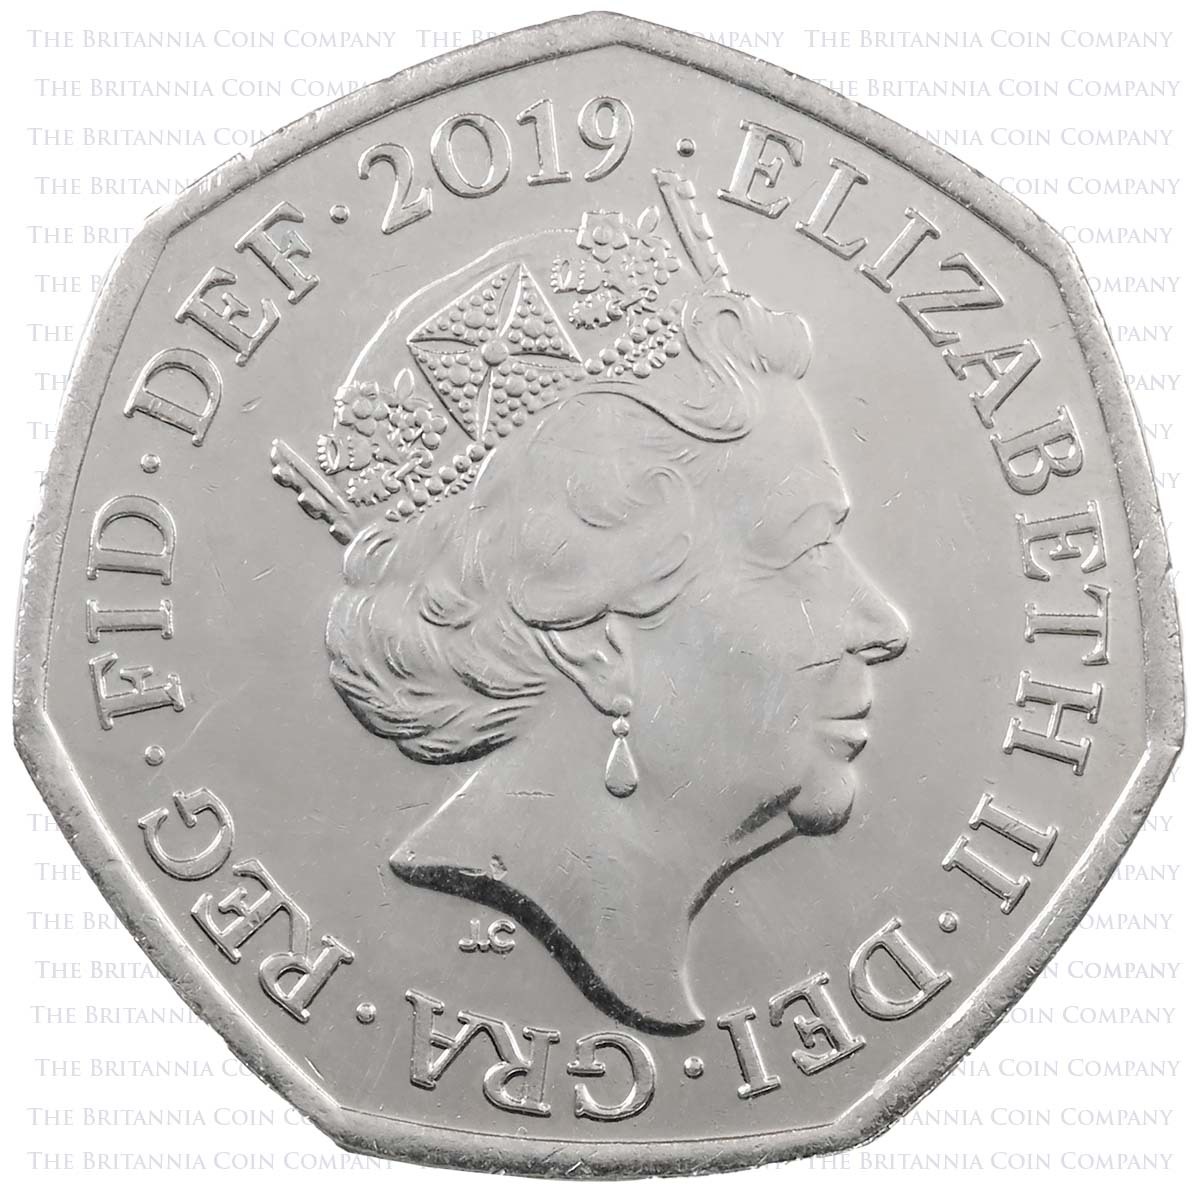 2019 Sherlock Holmes Arthur Conan Doyle Circulated Fifty Pence Coin Obverse